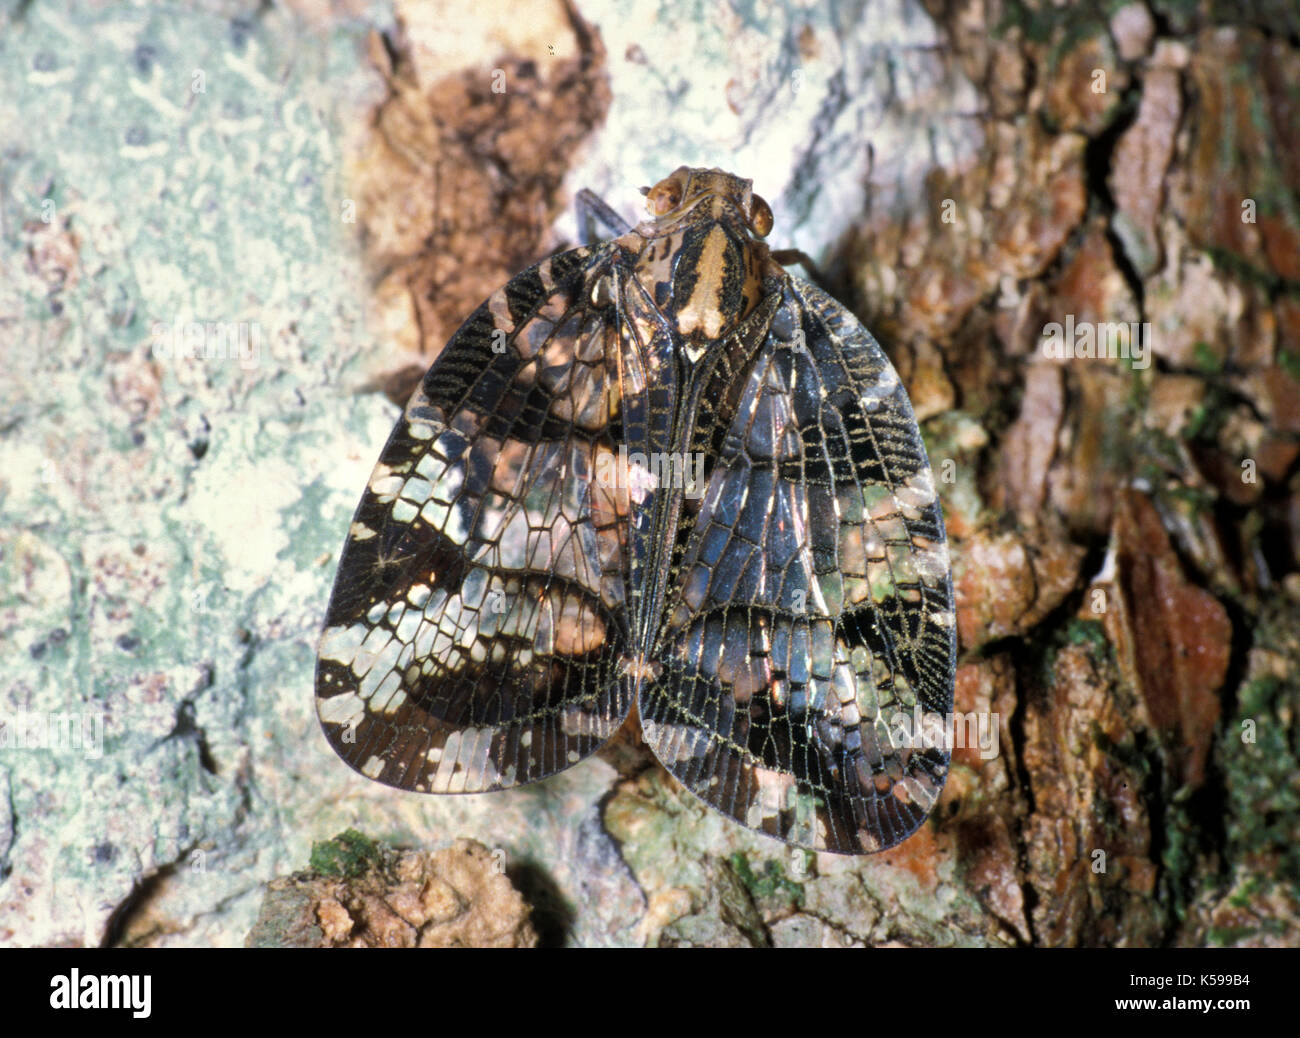 Lace Bug, Family: Tingidae, Belize, lacy wings Stock Photo